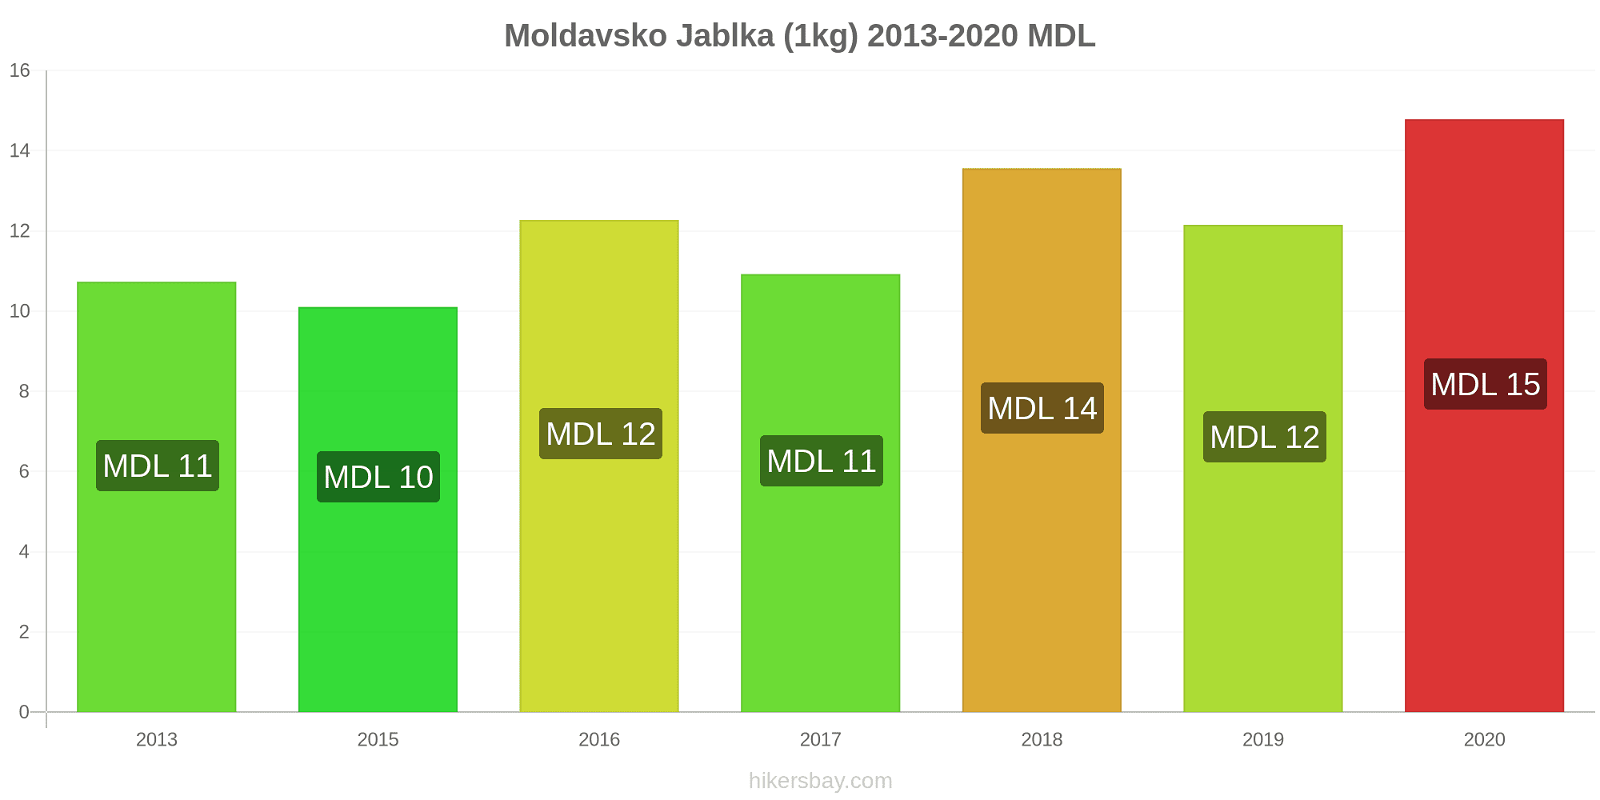 Moldavsko změny cen Jablka (1kg) hikersbay.com